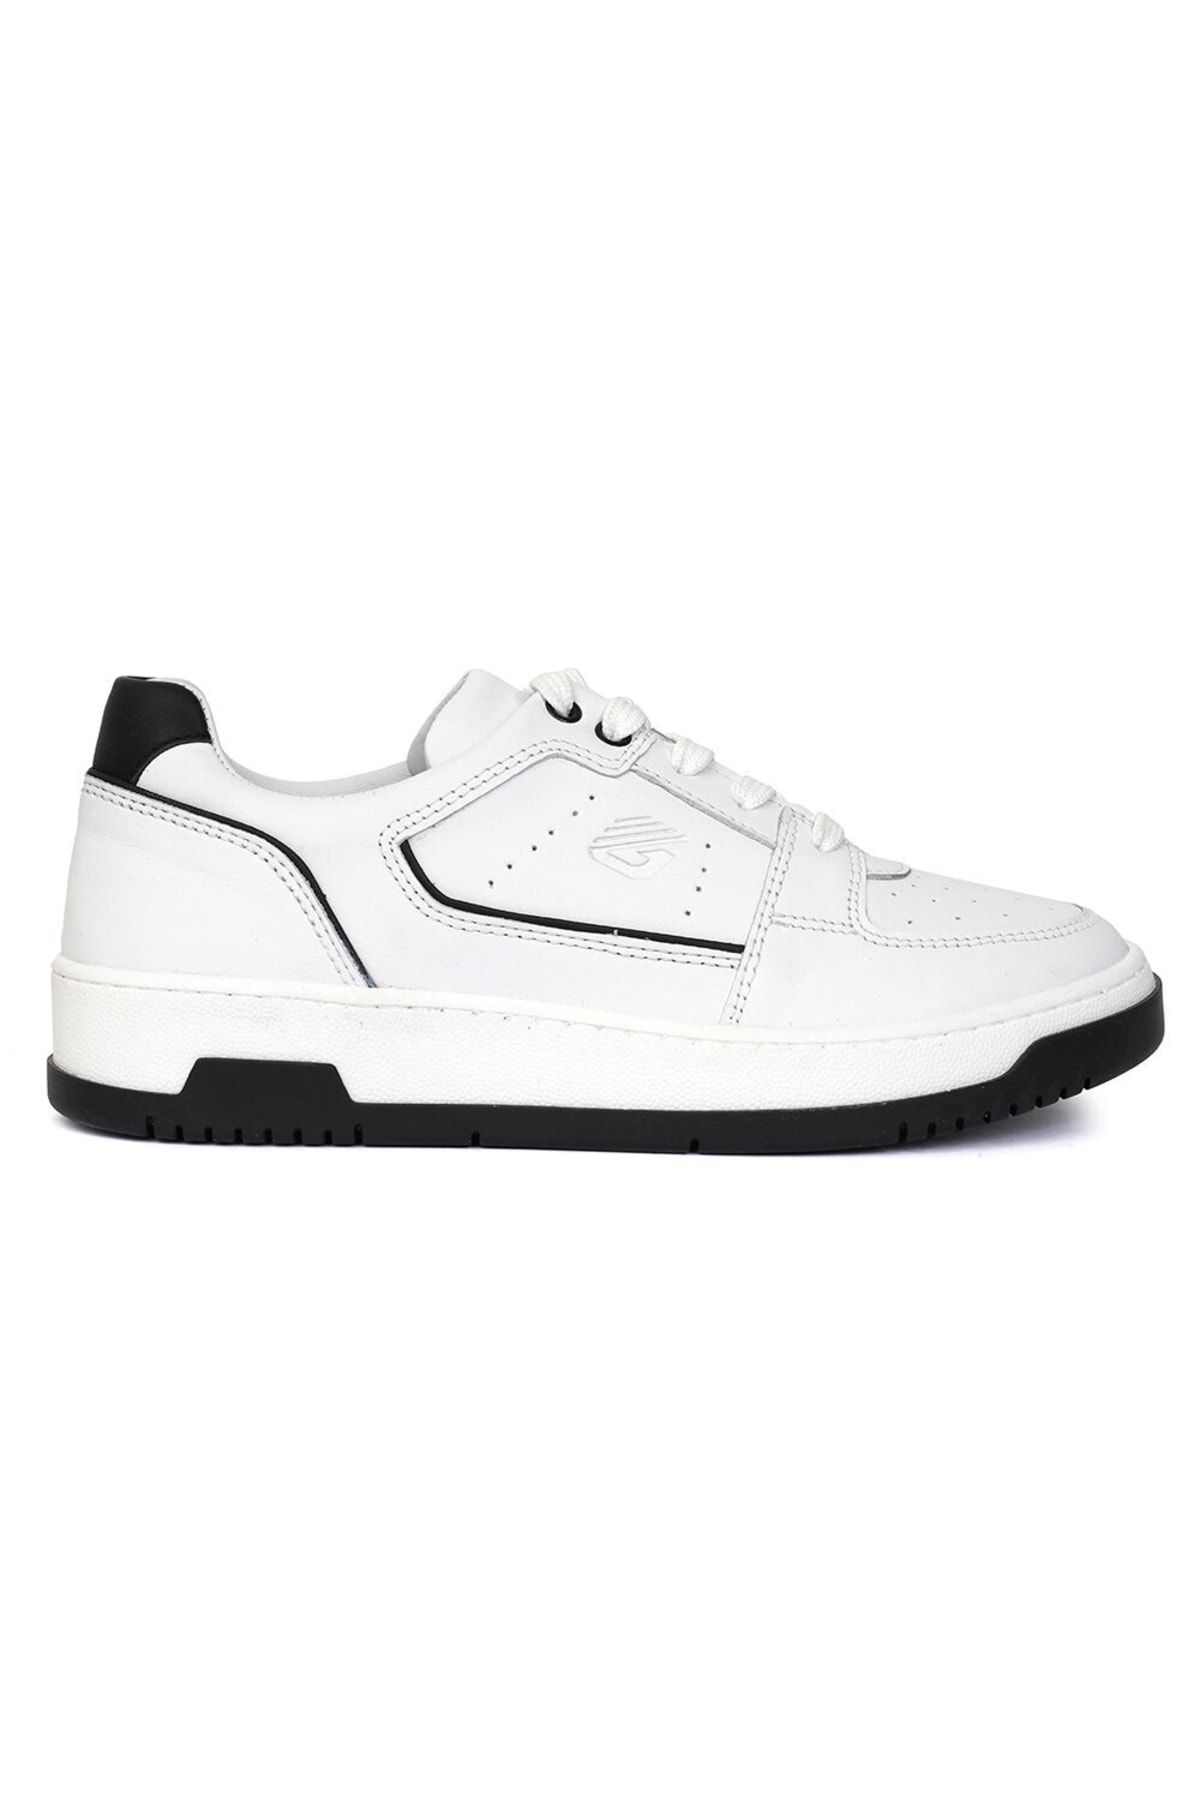 Greyder Kadın Beyaz Siyah Hakiki Deri Sneaker Ayakkabı 3y2sa32311